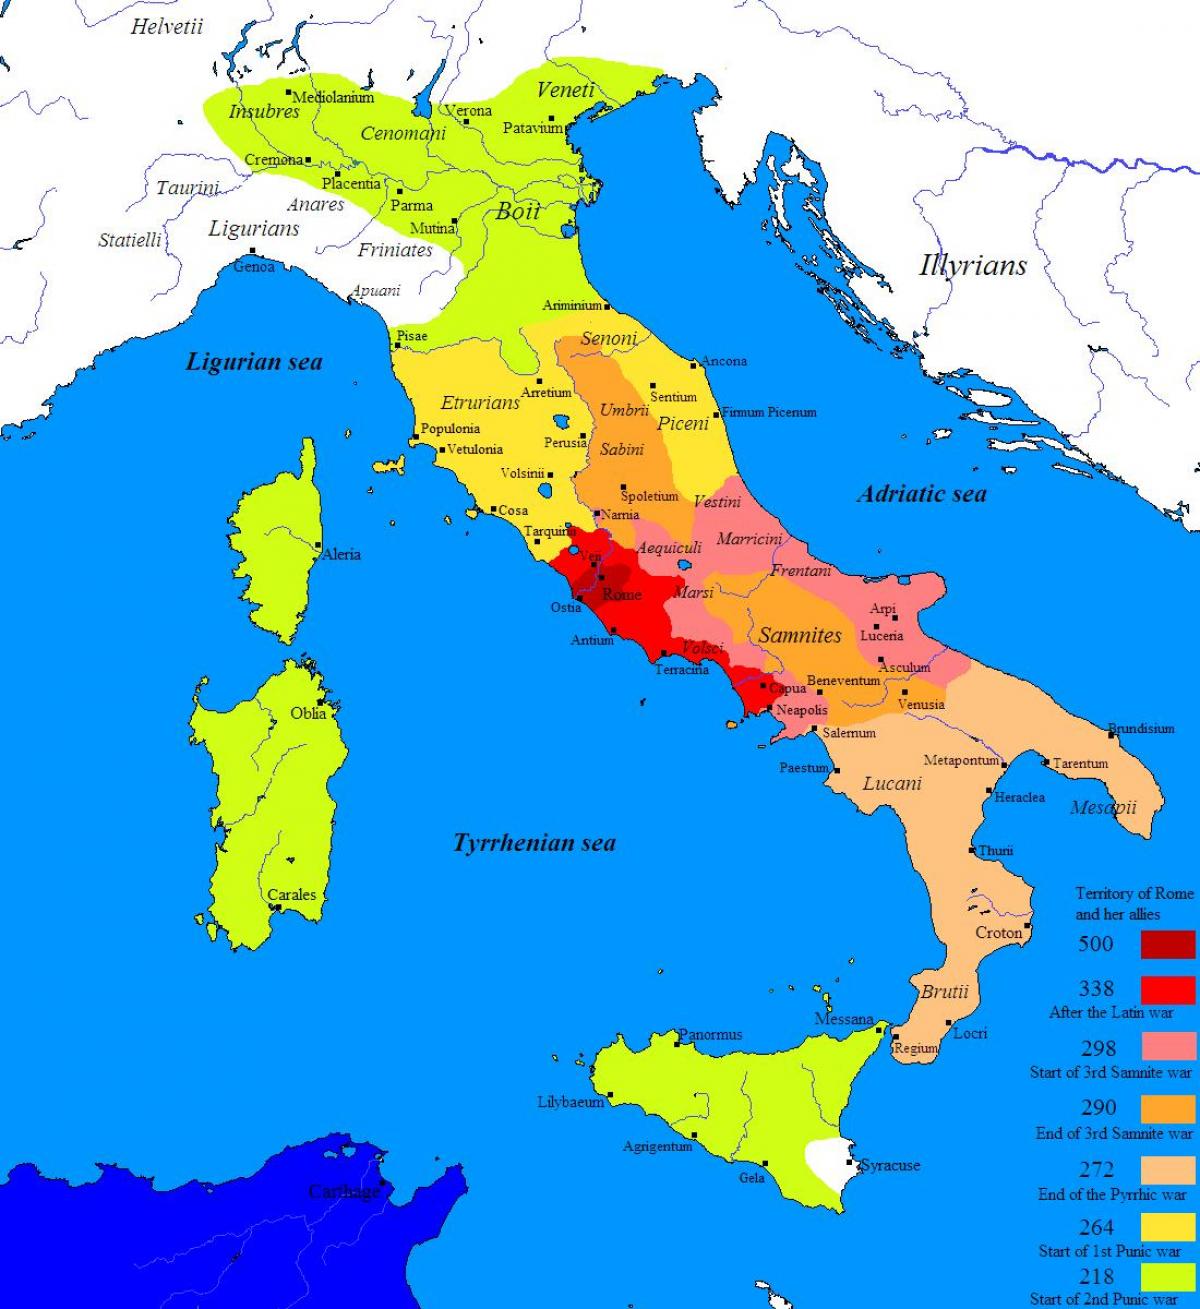 Mapa da antiga Roma e arredores